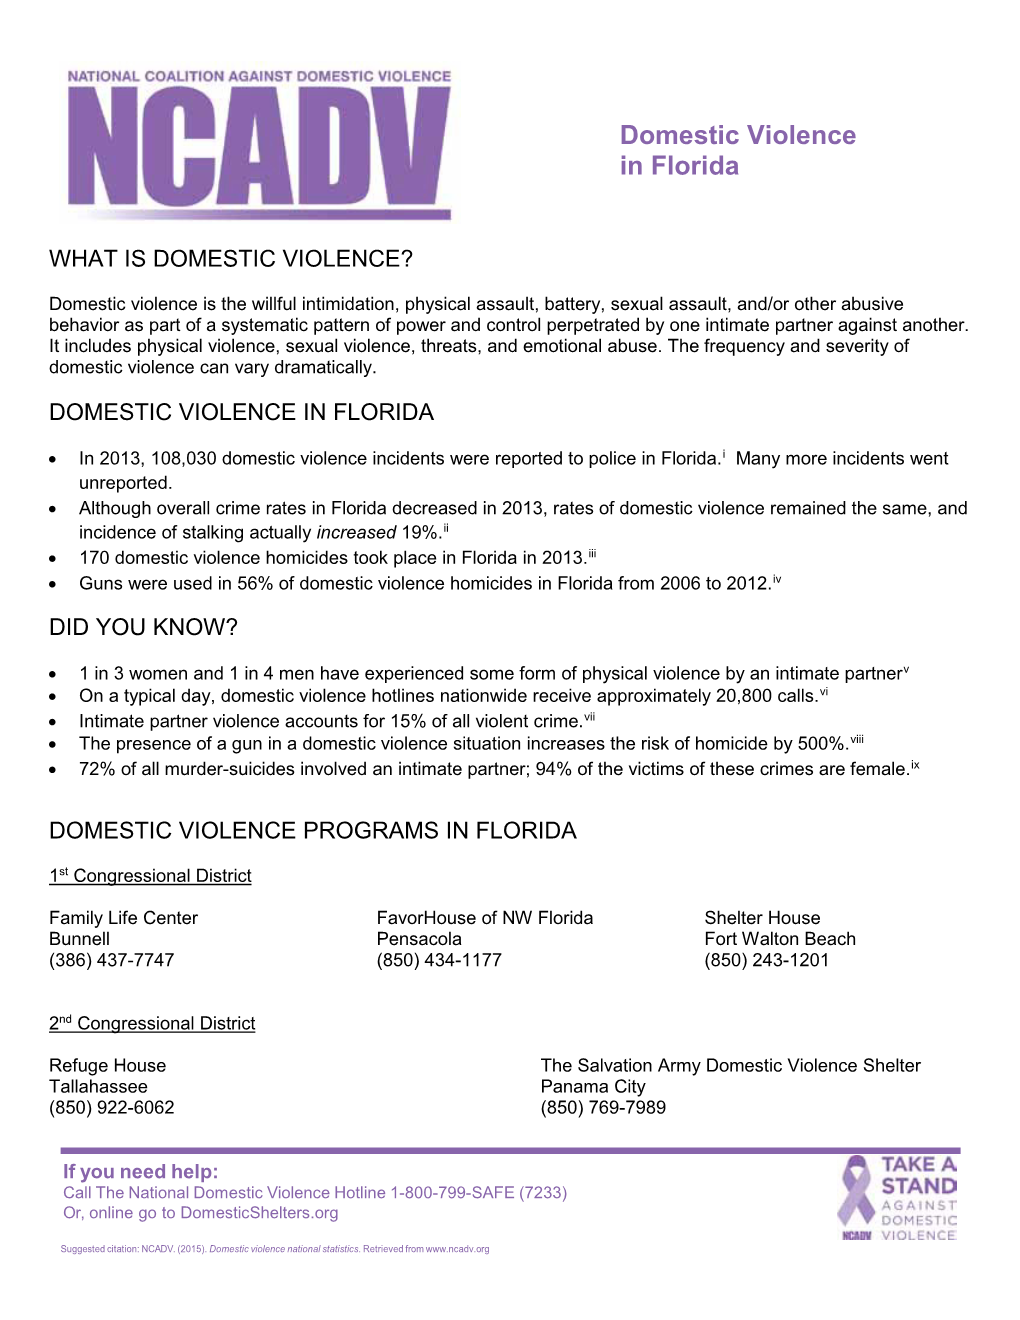 Domestic Violence in Florida